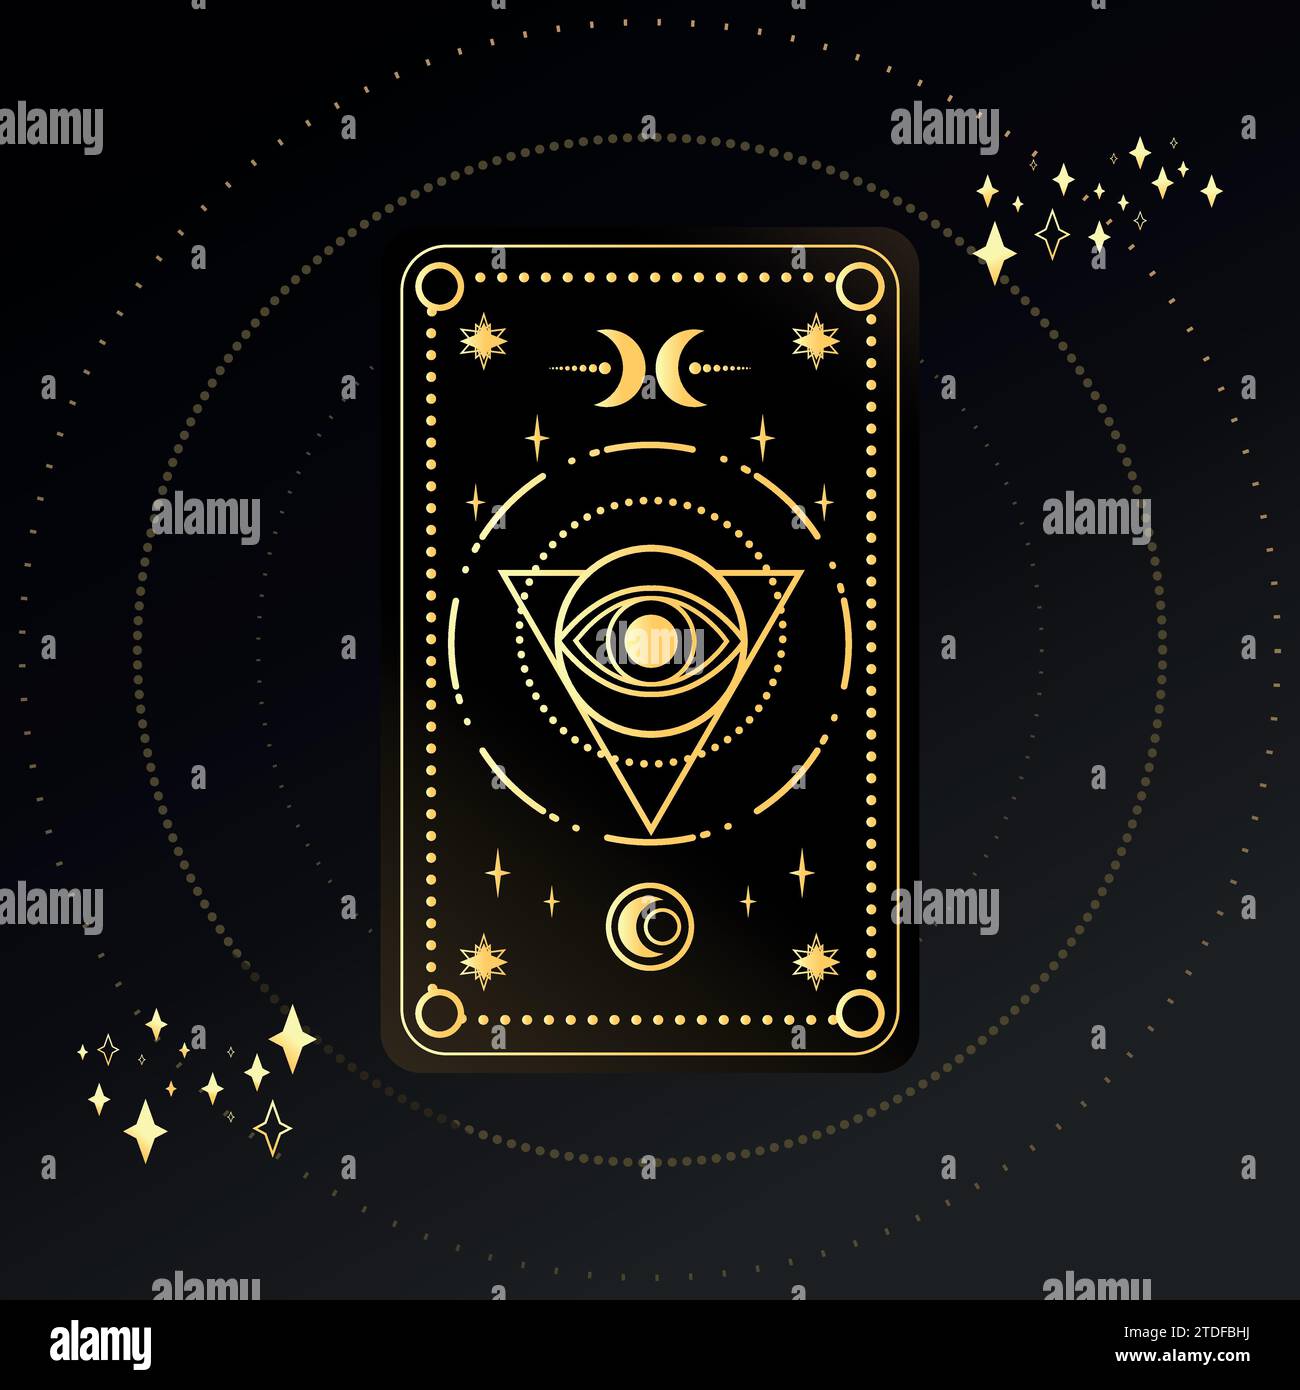 Goldene Tarotkarte mit einem magischen Auge und Sichel, verziert mit geometrischen Formen. Tarot-Symbolismus. Rätsel, Astrologie, Esoterik. Vektorabbildung Stock Vektor